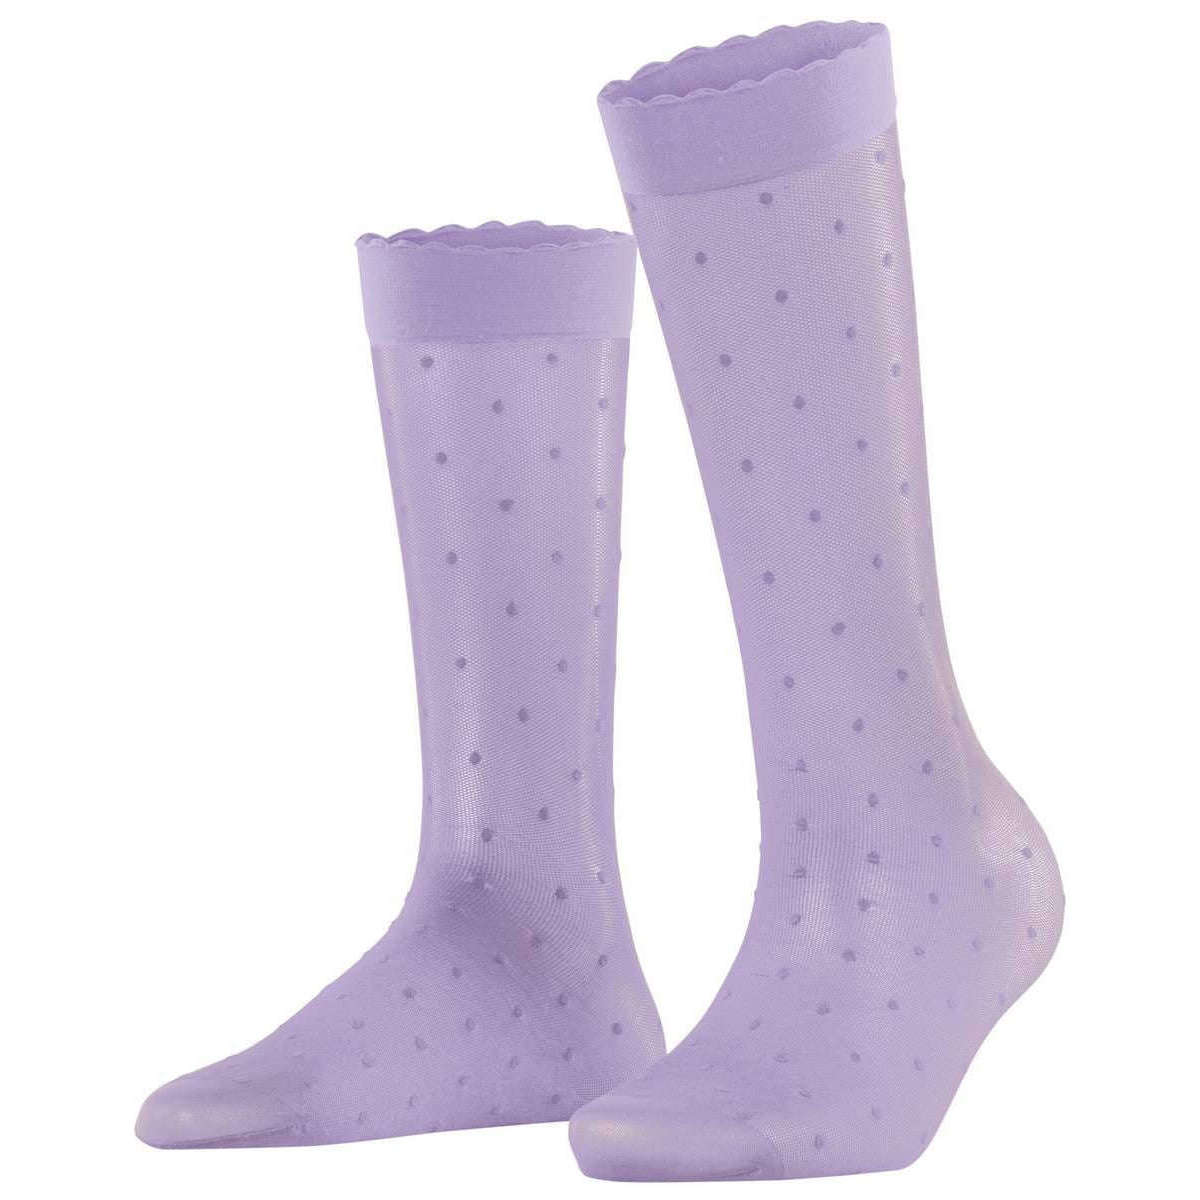 Falke Dot 15 Denier Knee High Socks - Lupine Lilac